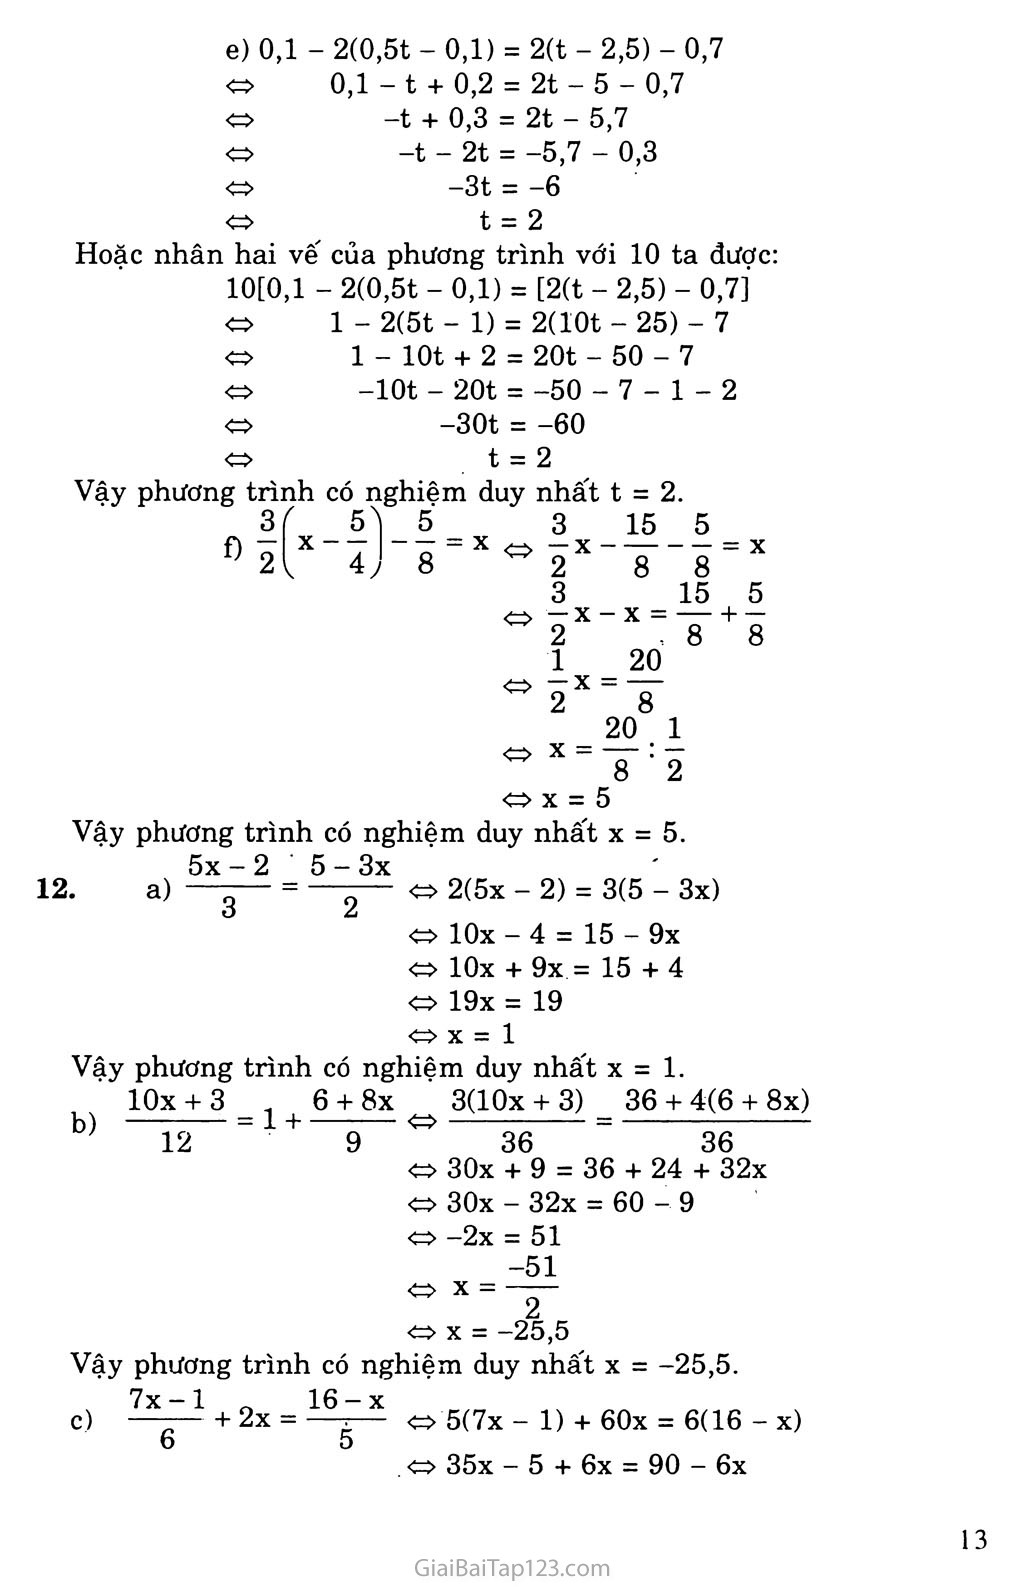 Bài 3. Phương trình đưa về dạng ax + b = 0 trang 4